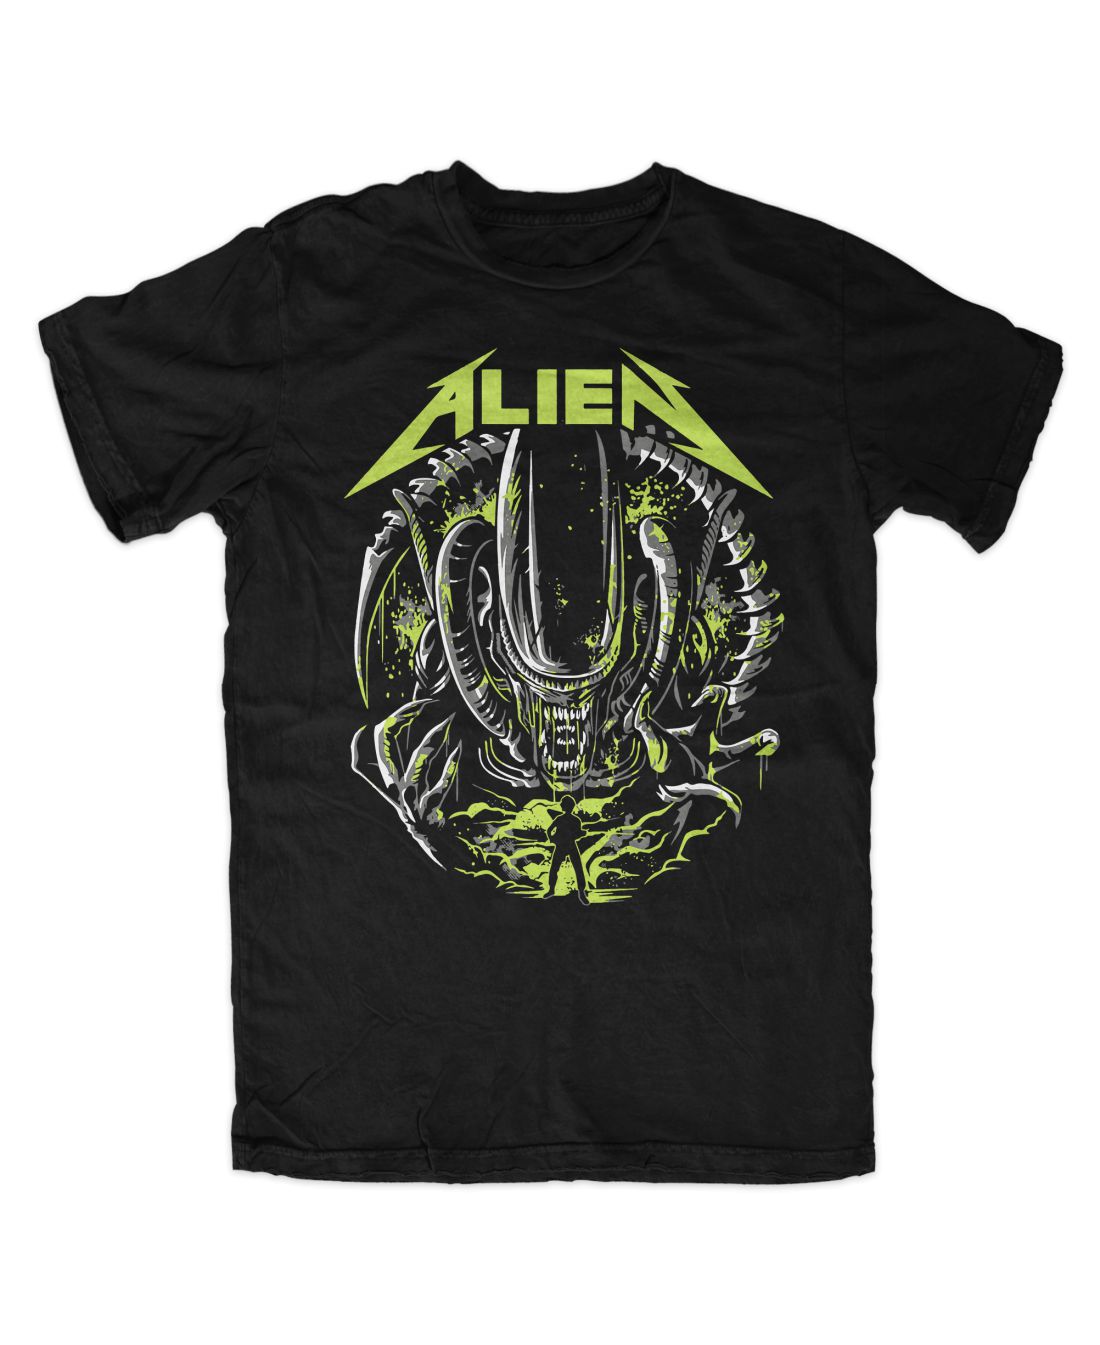 Alien 001 metal series